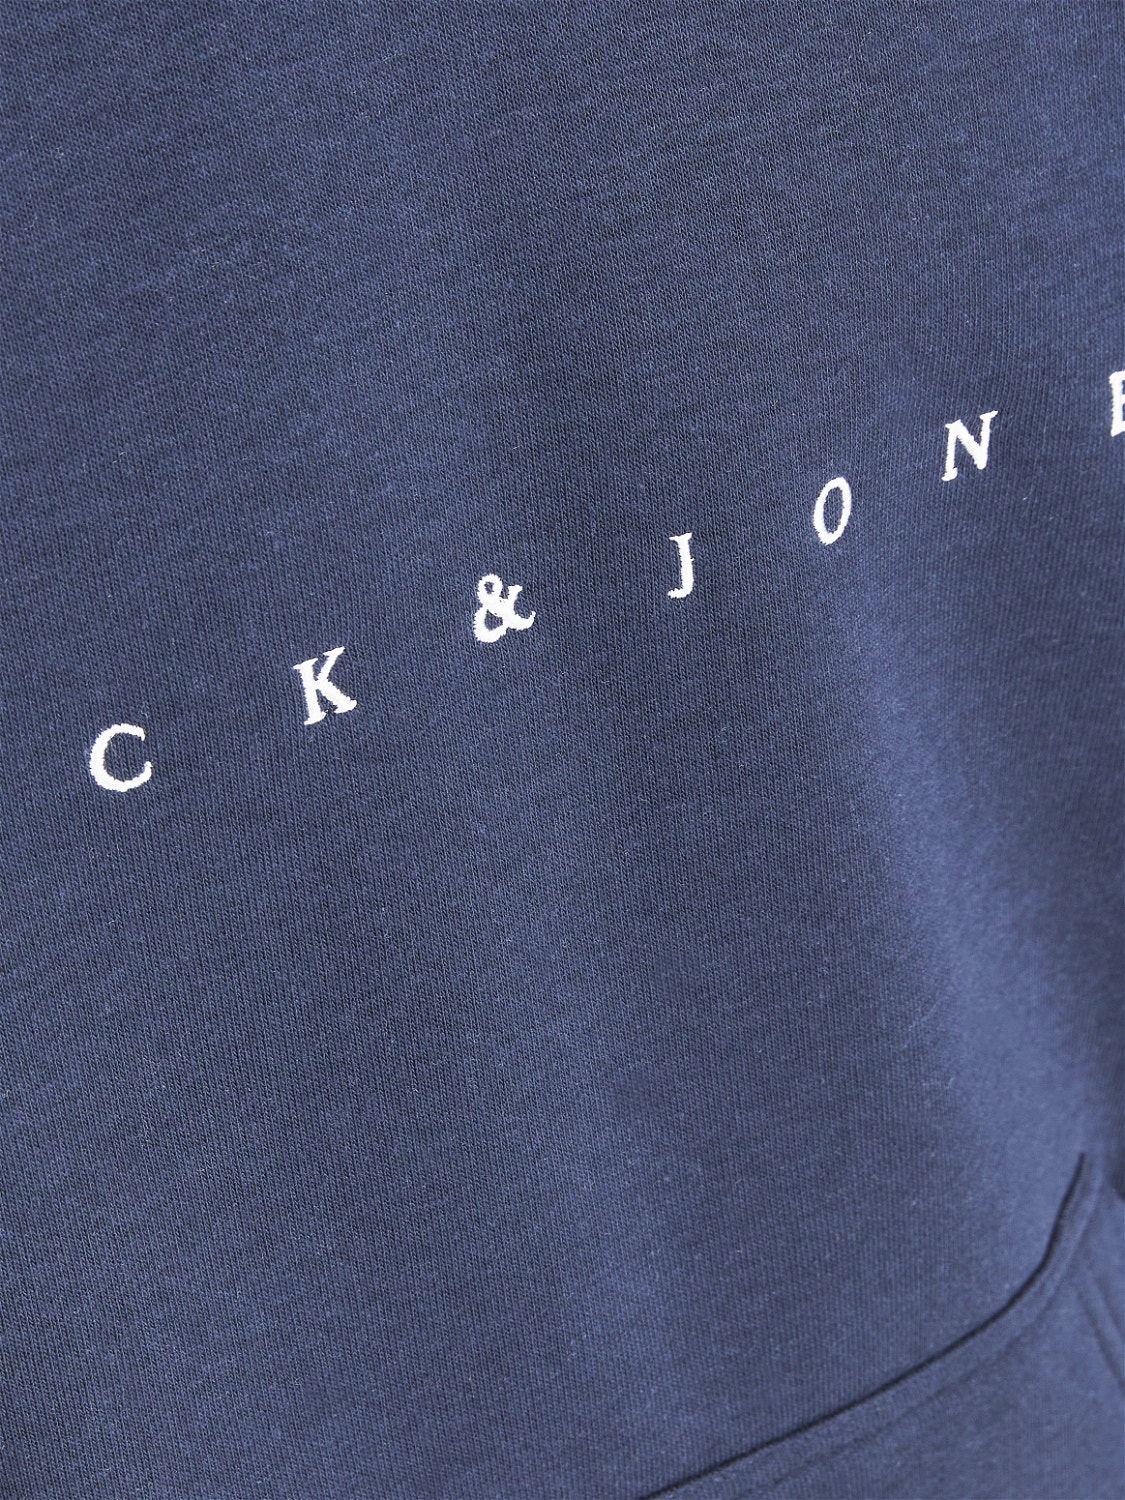 Jack & Jones Z logo Bluza z kapturem Dla chłopców -Navy Blazer - 12214983